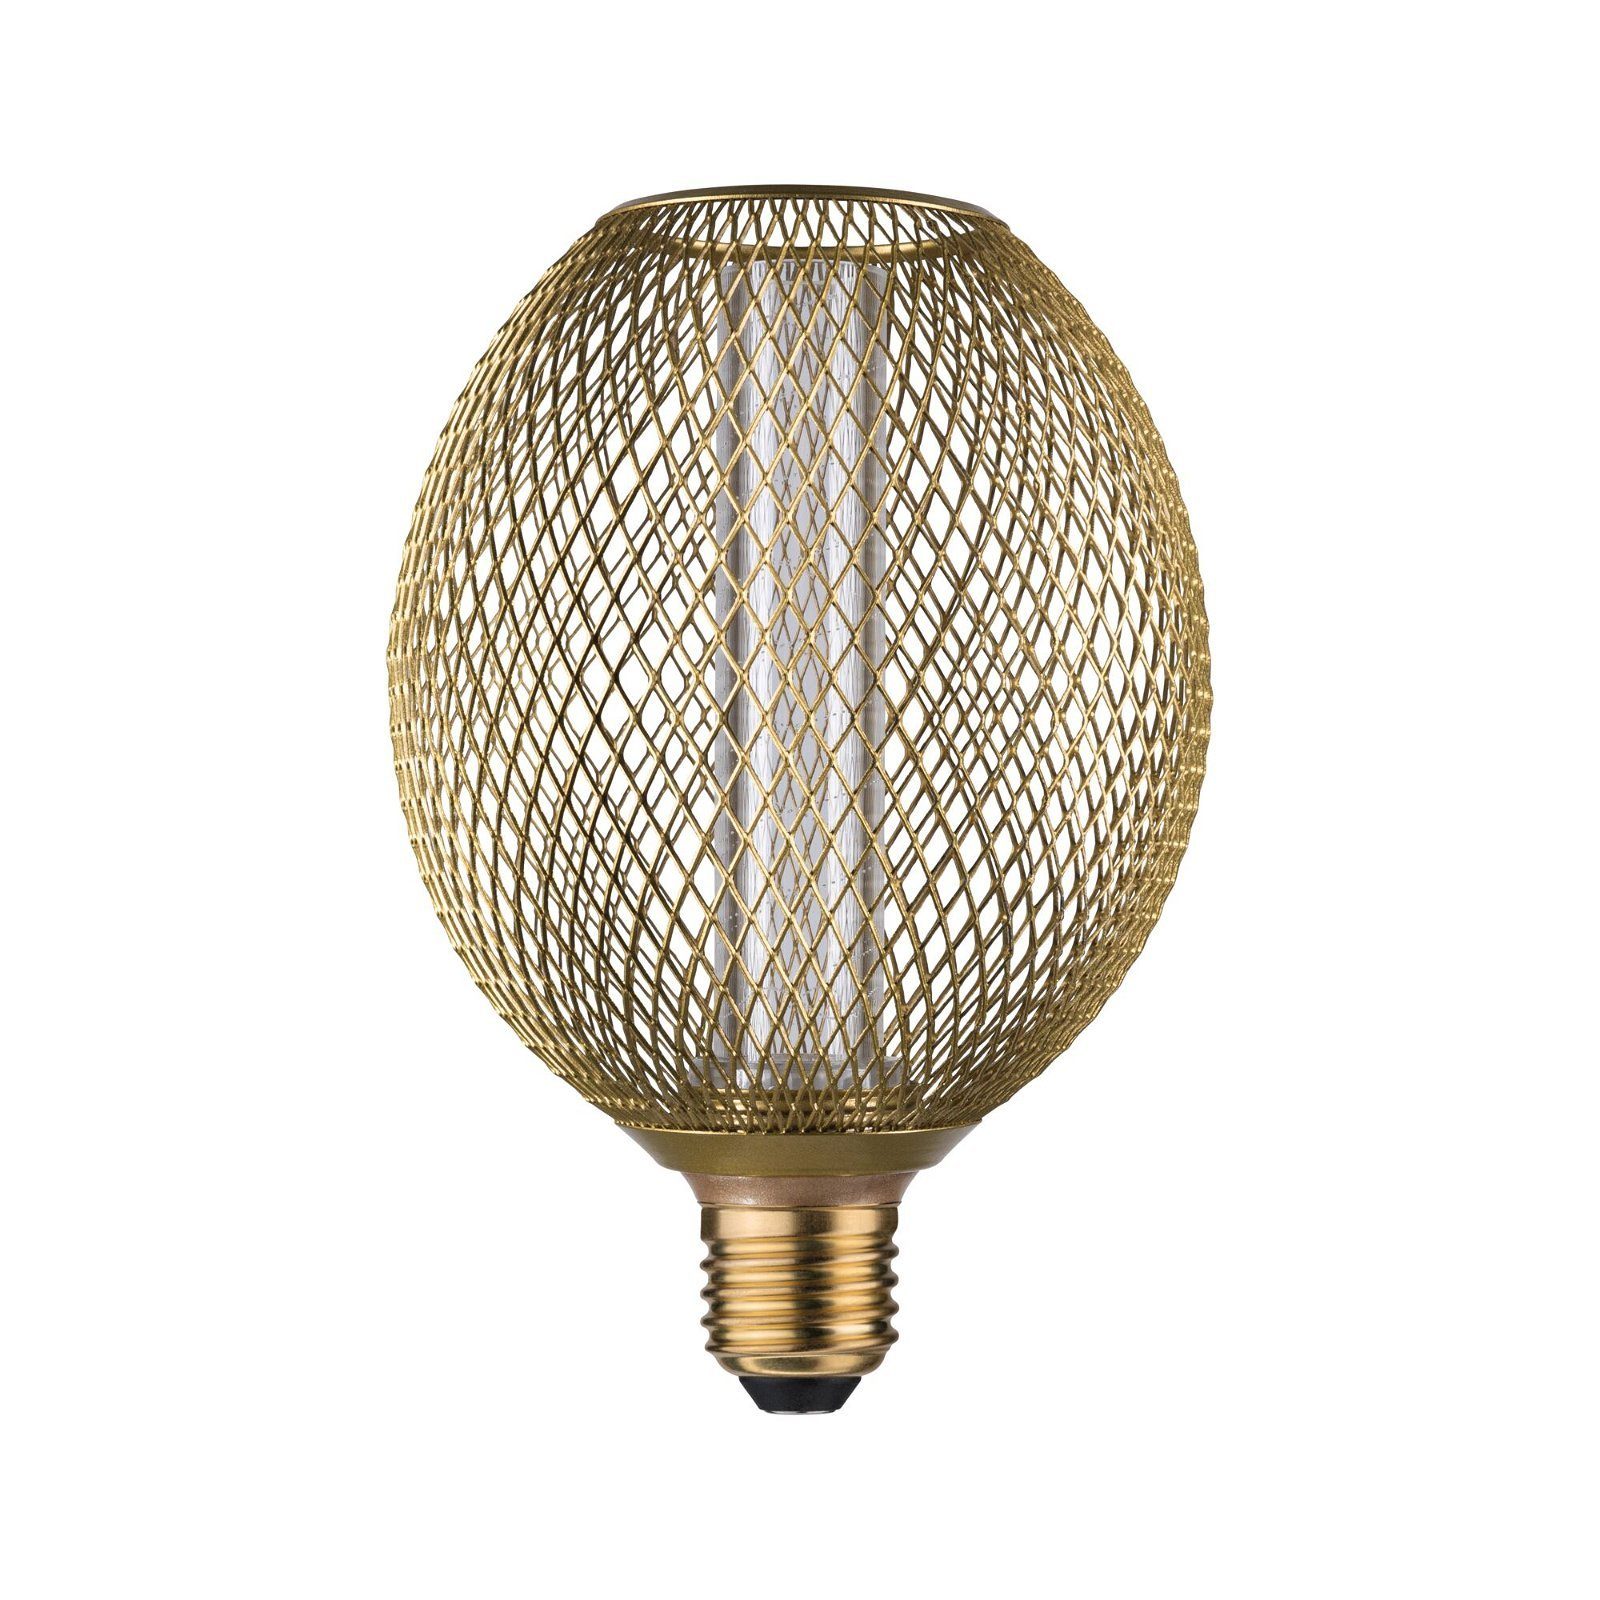 Paulmann LED-Leuchtmittel Metallic Glow Globe LED-Technik Gemütliche 230V, 200lm durch und 1800K Akzentbeleuchtung goldene messing Spiral 4,2W